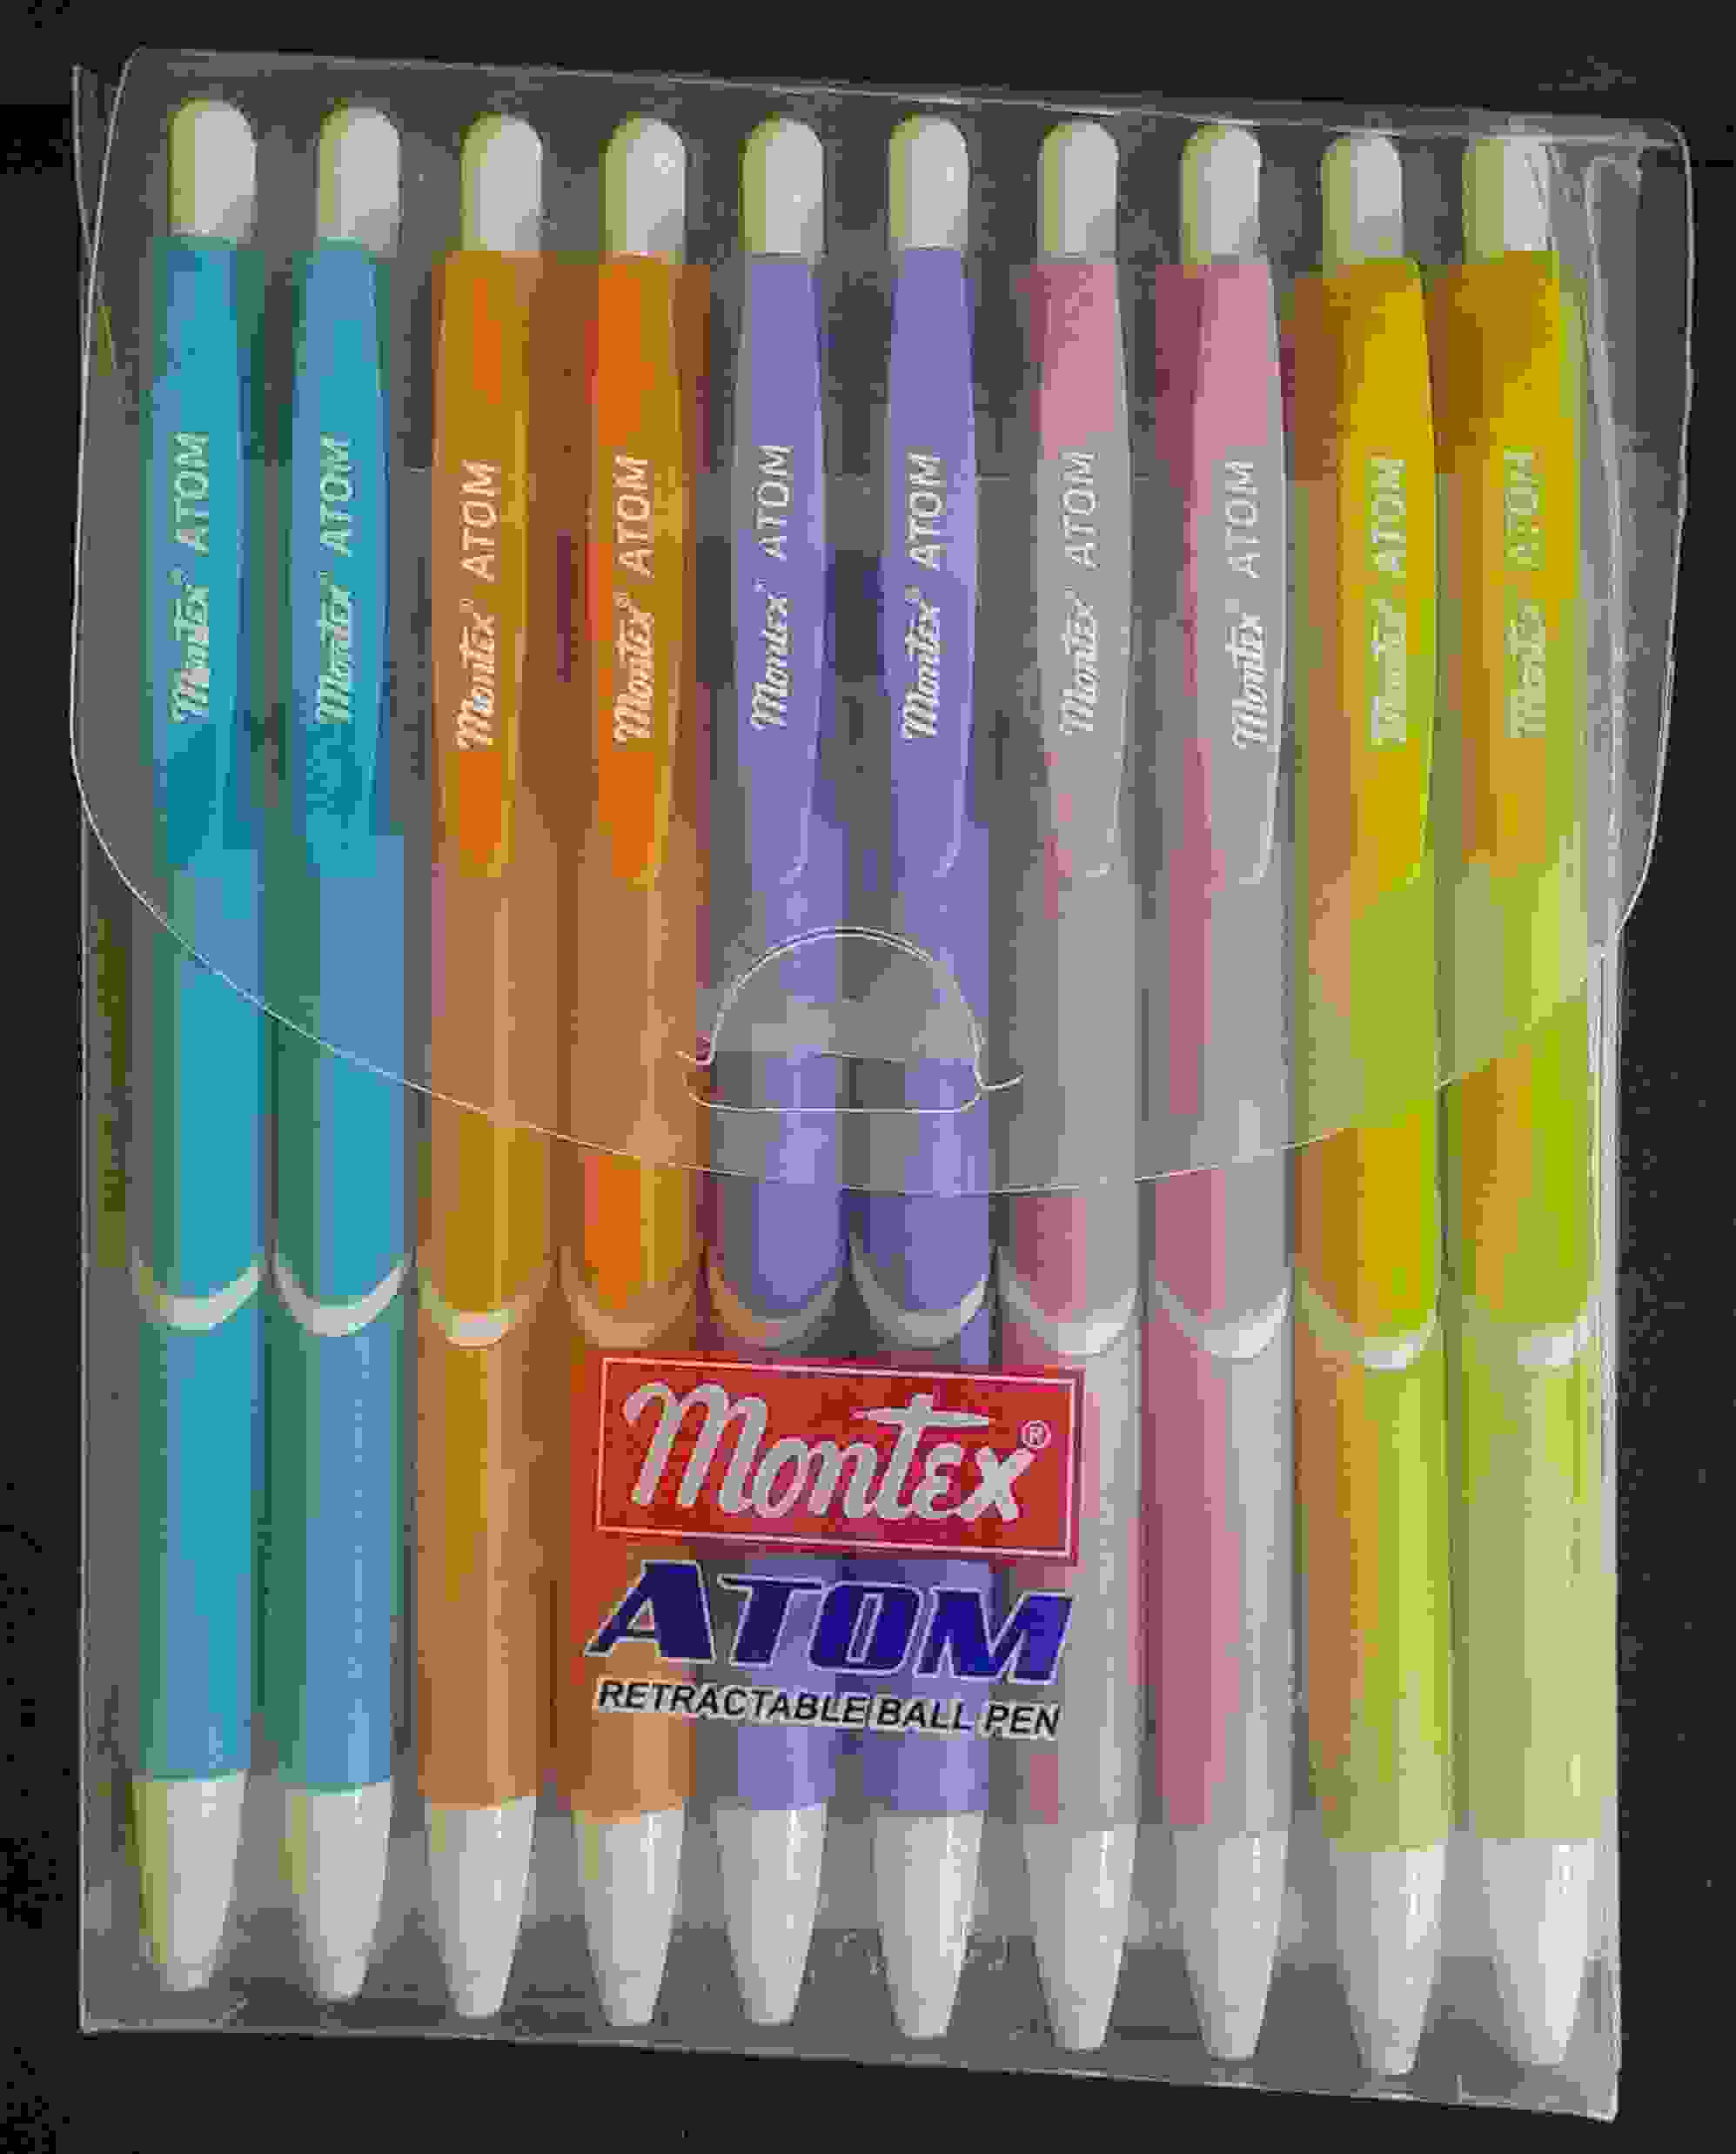 Ball Pen Black Colour - Retractable ball pen - Montex Atom brand - Pack of 10Nos